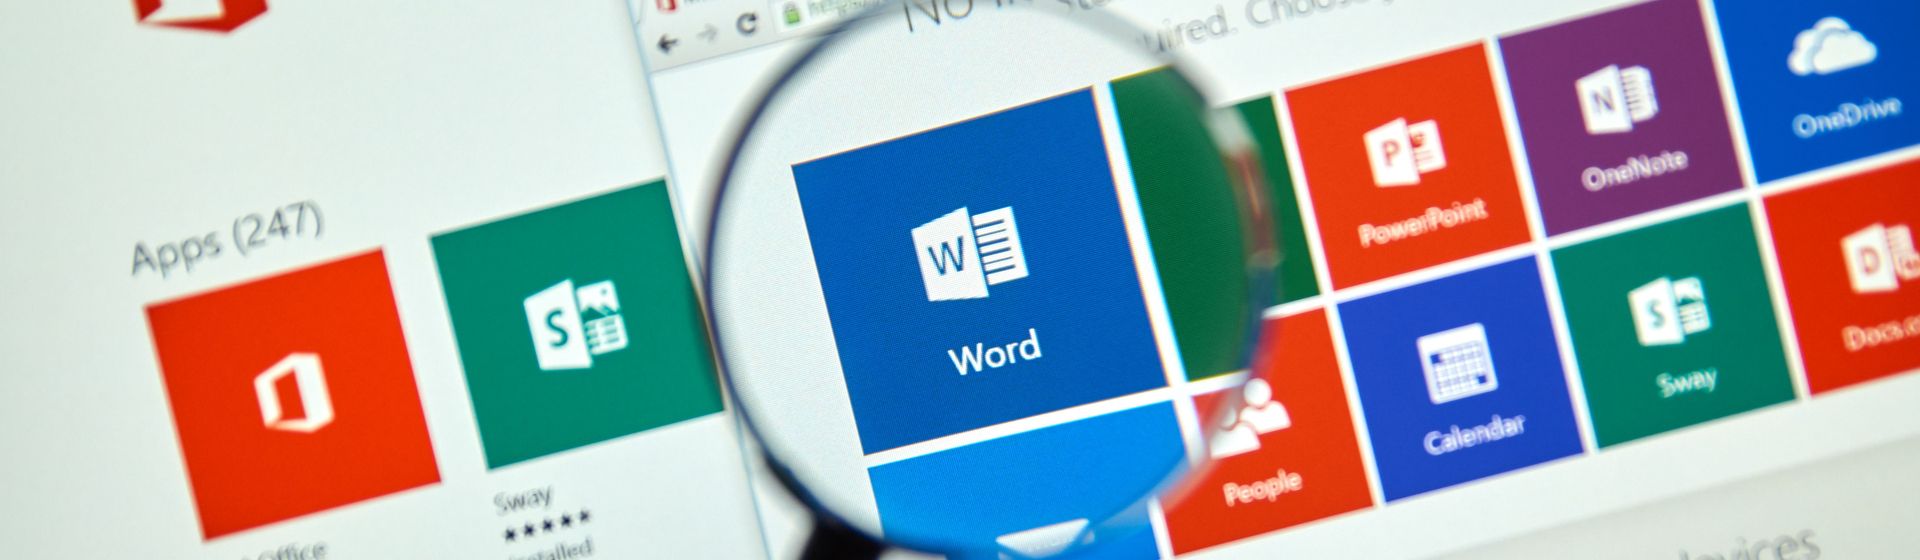 informatica facil: Como digitar e Imprimir no Word